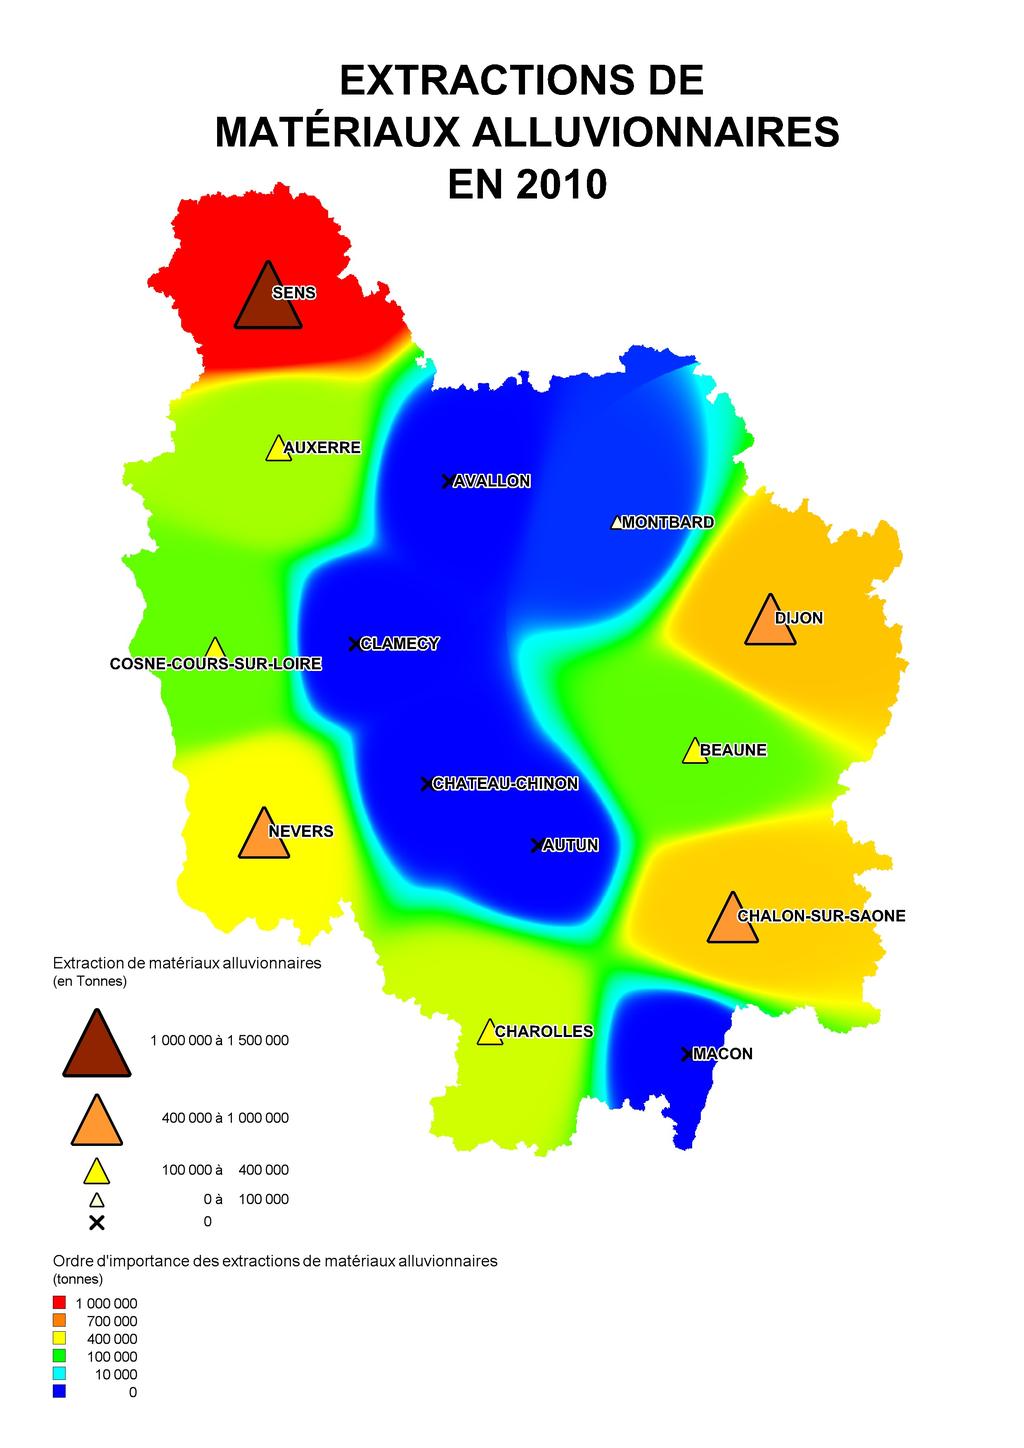 2 Extractions de matériaux alluvionnaires En 2010, les extractions de matériaux alluvionnaires en Bourgogne étaient de l